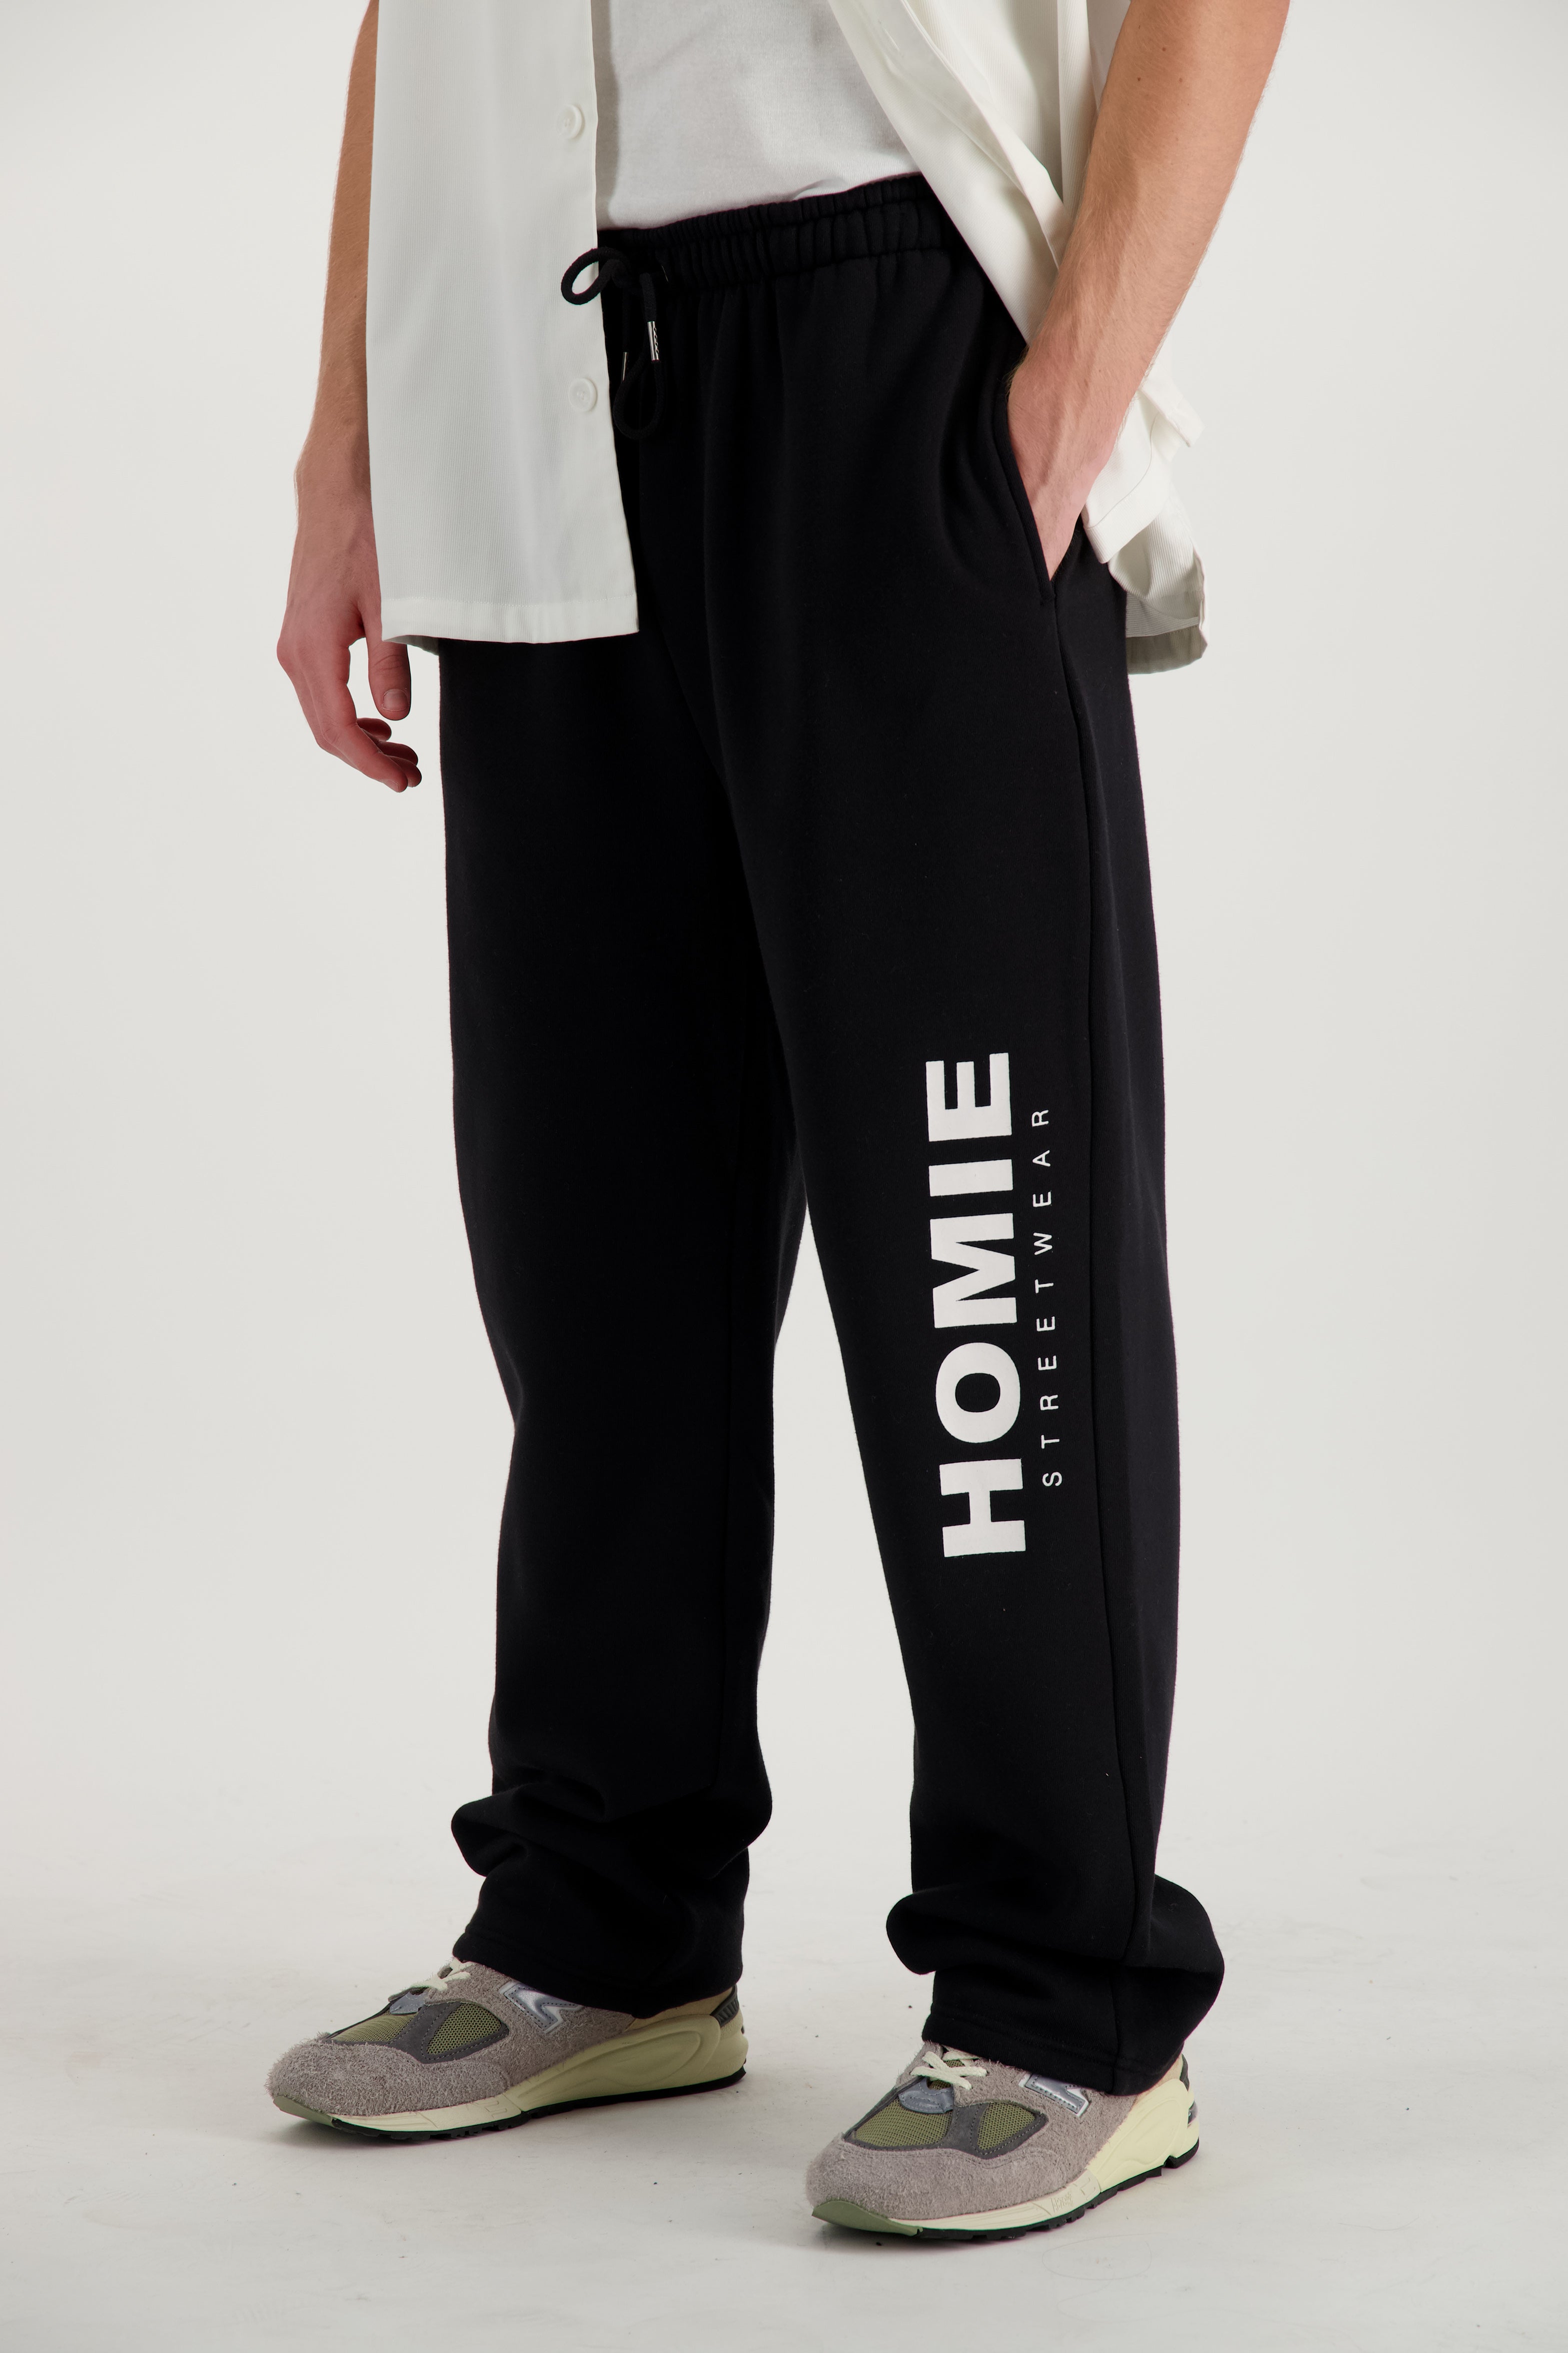 HoMie Streetwear Trackpants - Black